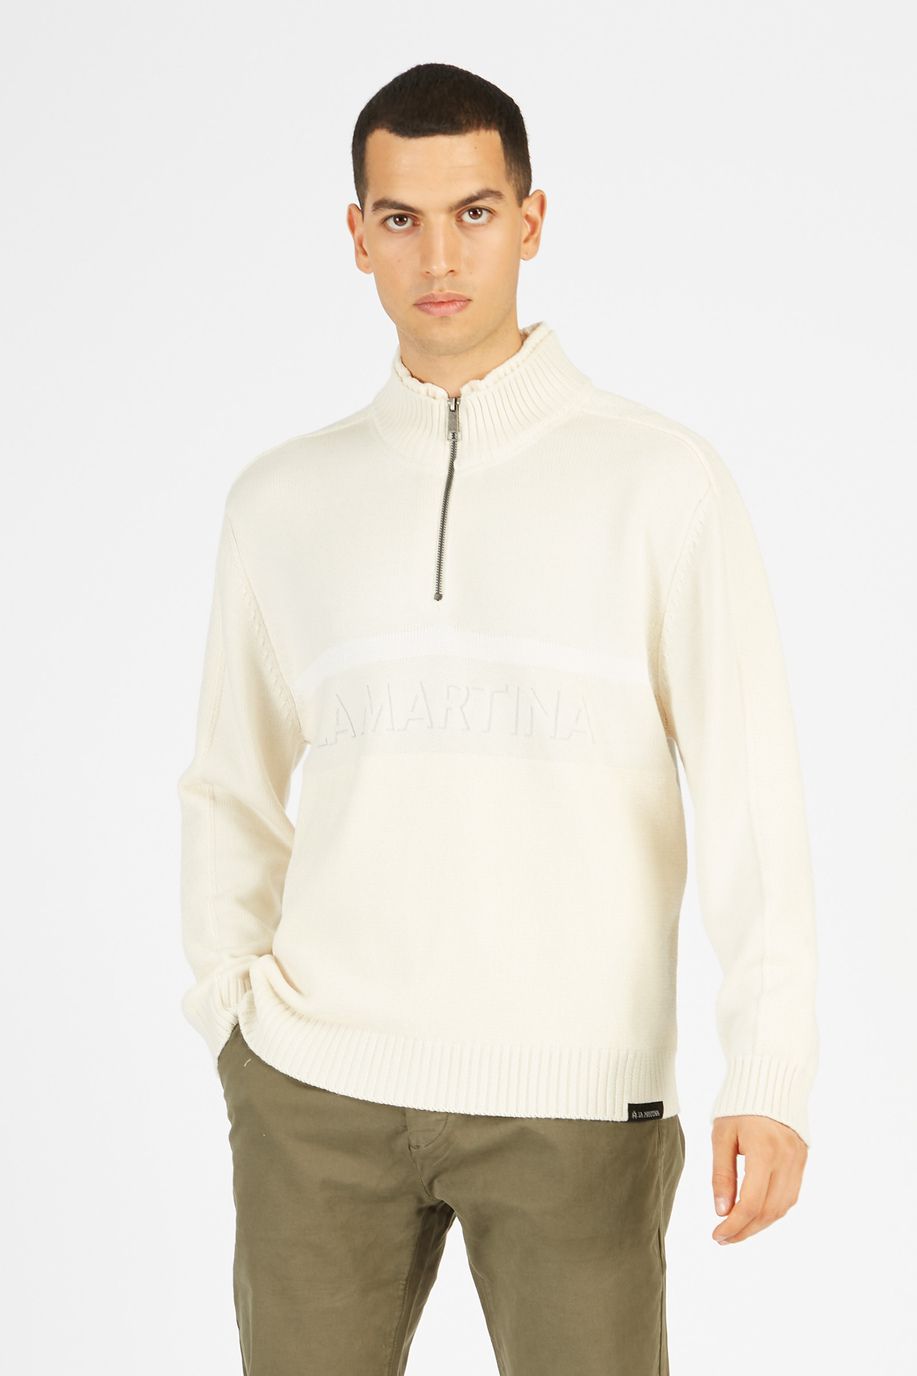 Chandail en tricot pour hommes avec manches longues en coton et laine - Jet Set | La Martina - Official Online Shop